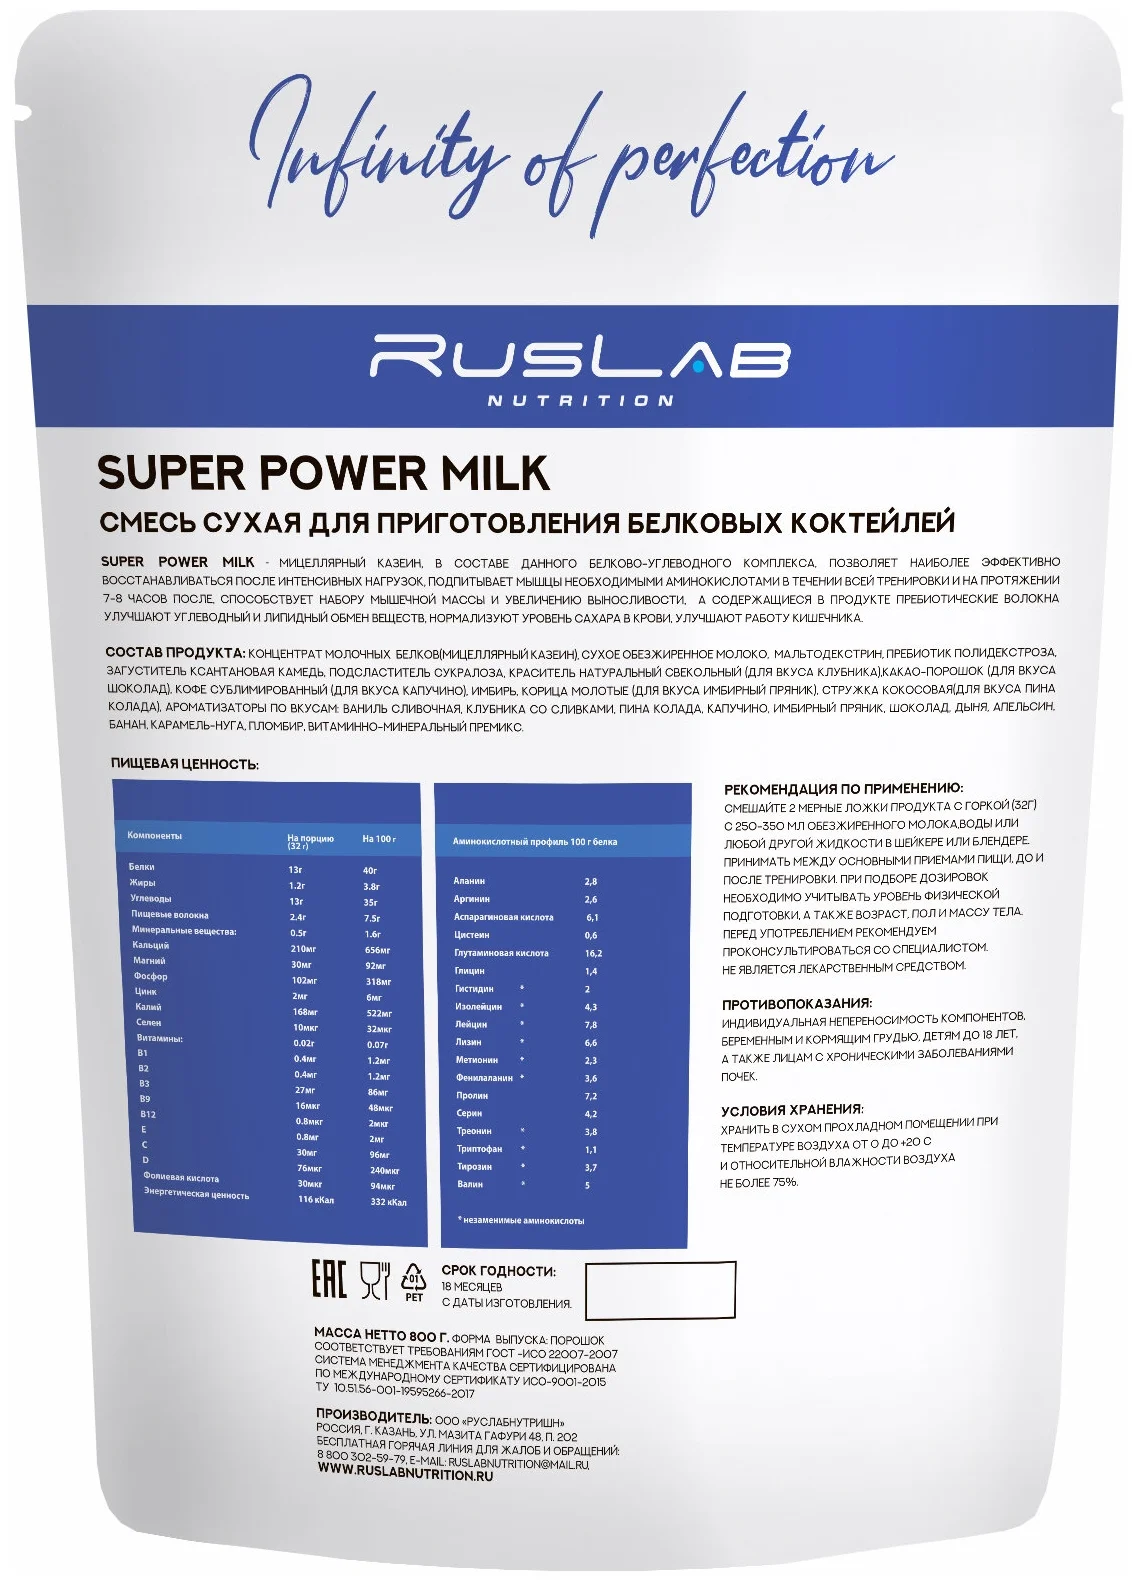 SUPER POWER MILK,белковый коктейль (800 гр),вкус капучино - количество порций: 25